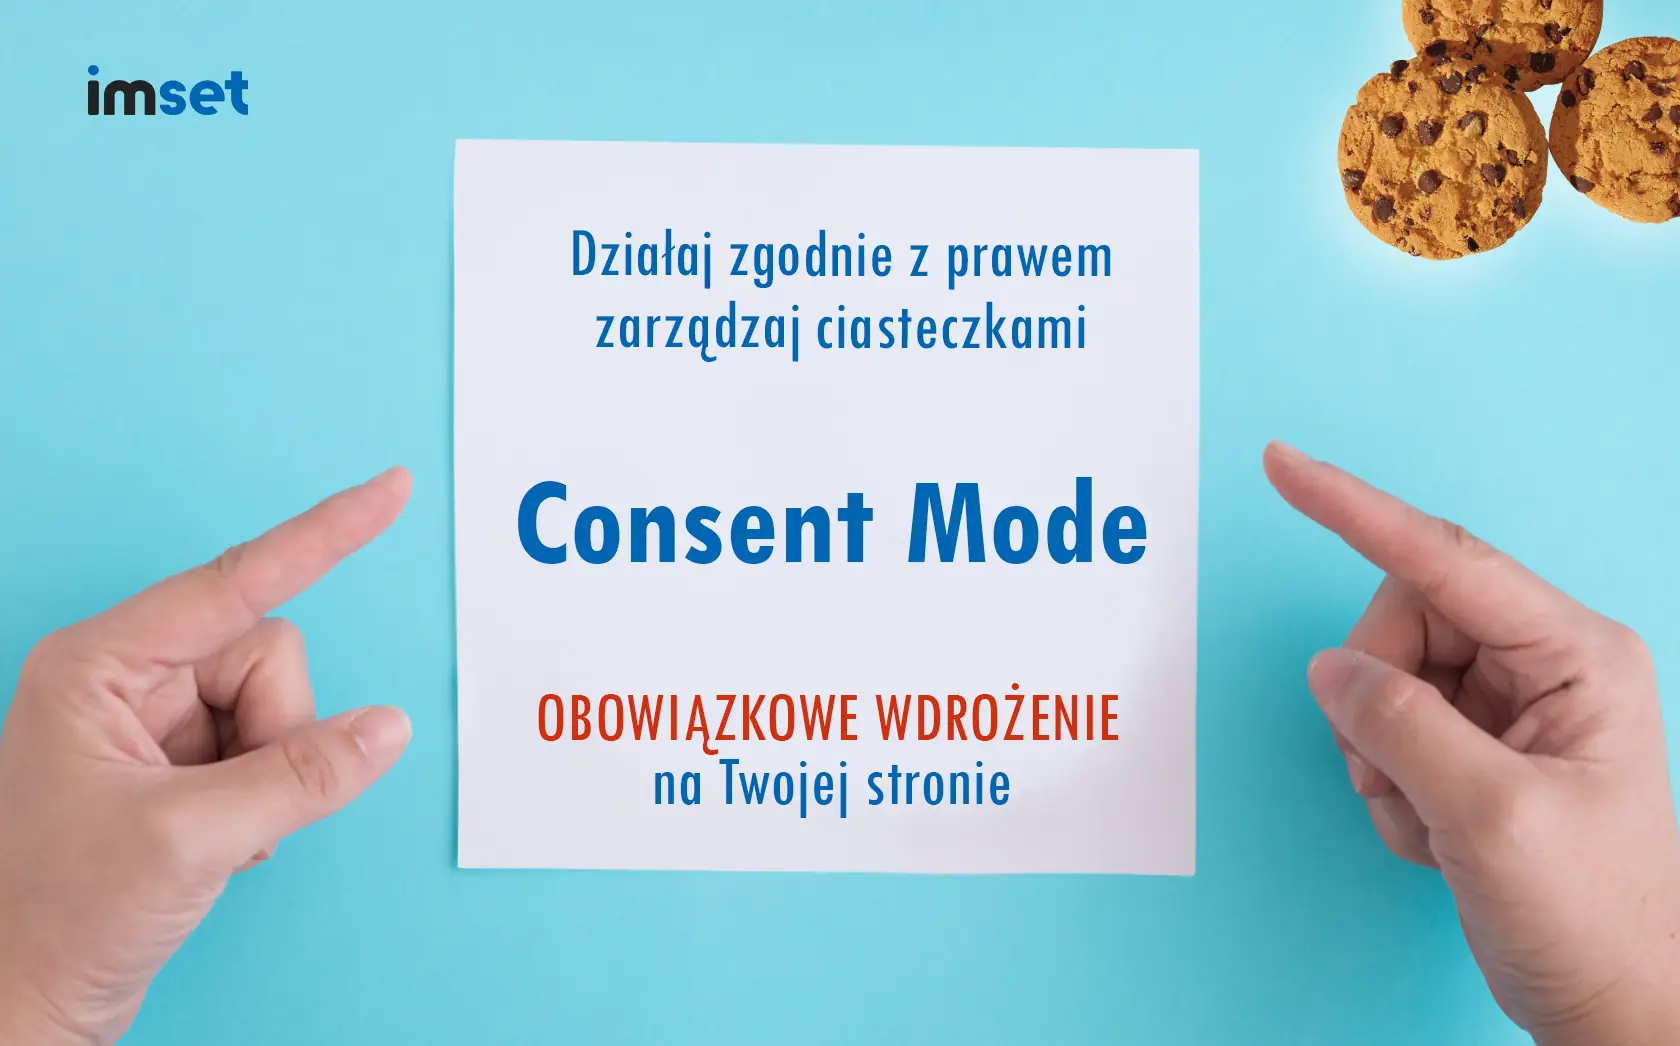 Consent Mode - Czyli cookies zgodnie z prawem.